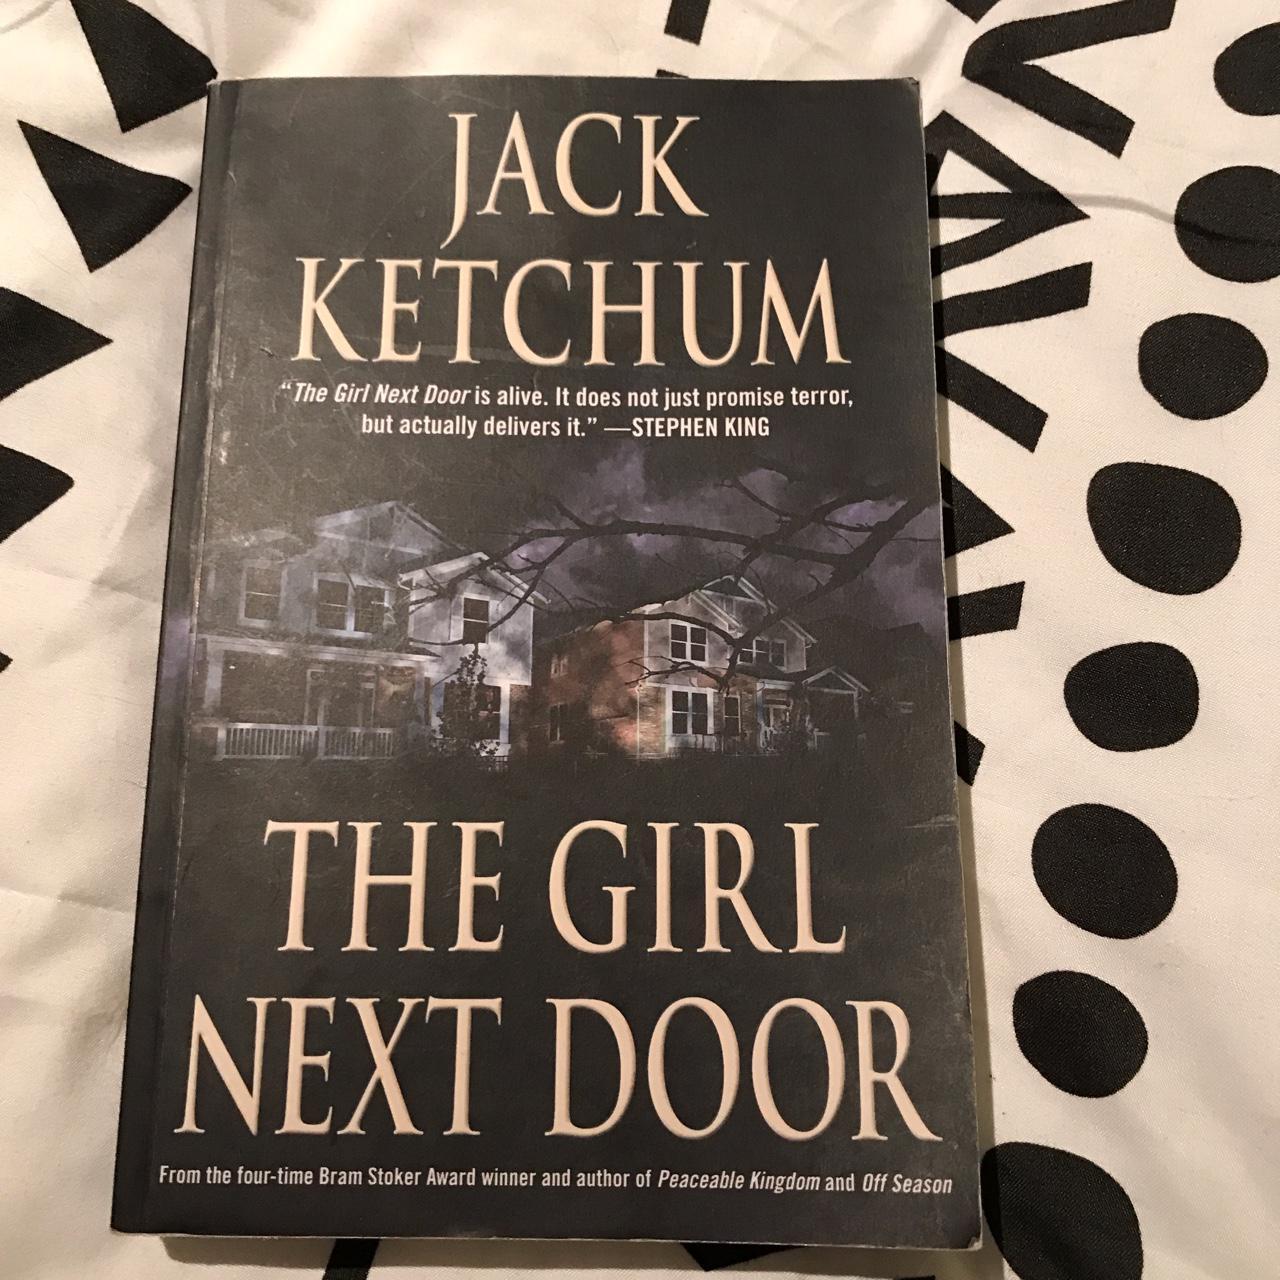 The girl next door jack ketchum